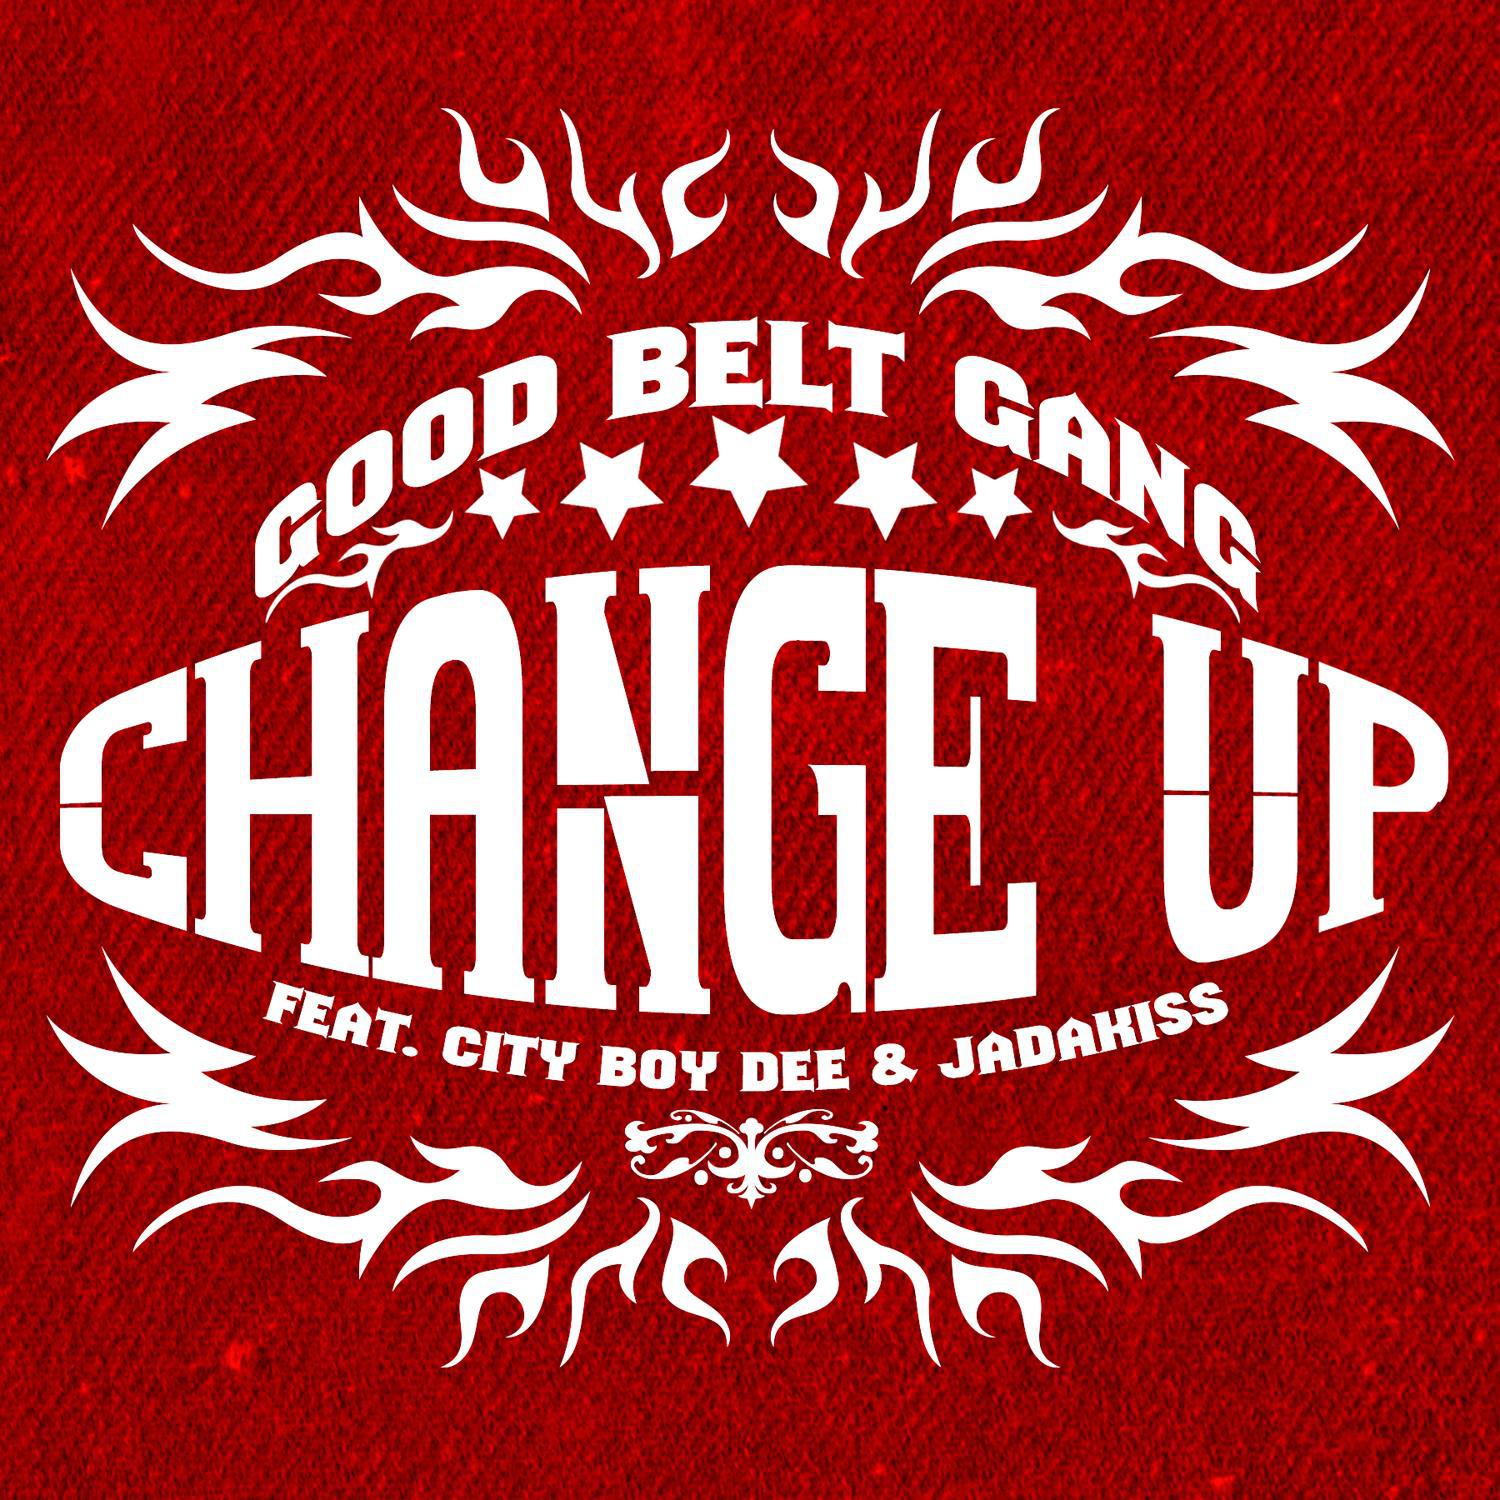 Change Up (feat. City Boy Dee & Jadakiss)